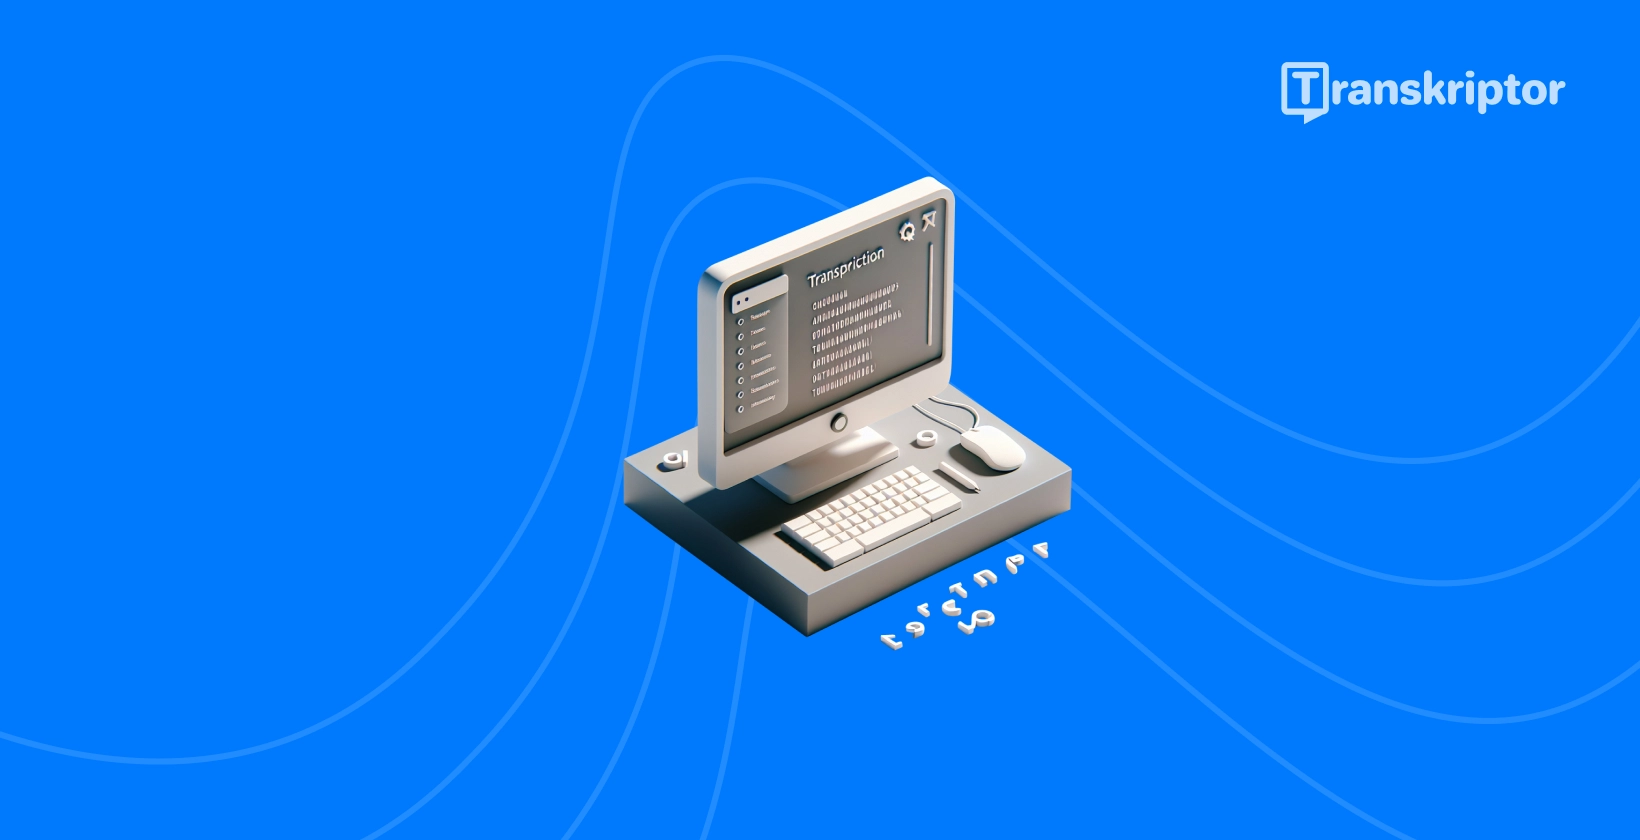 Poenostavljen prikaz programske opreme za prepis zvoka MuseScore na namizju.